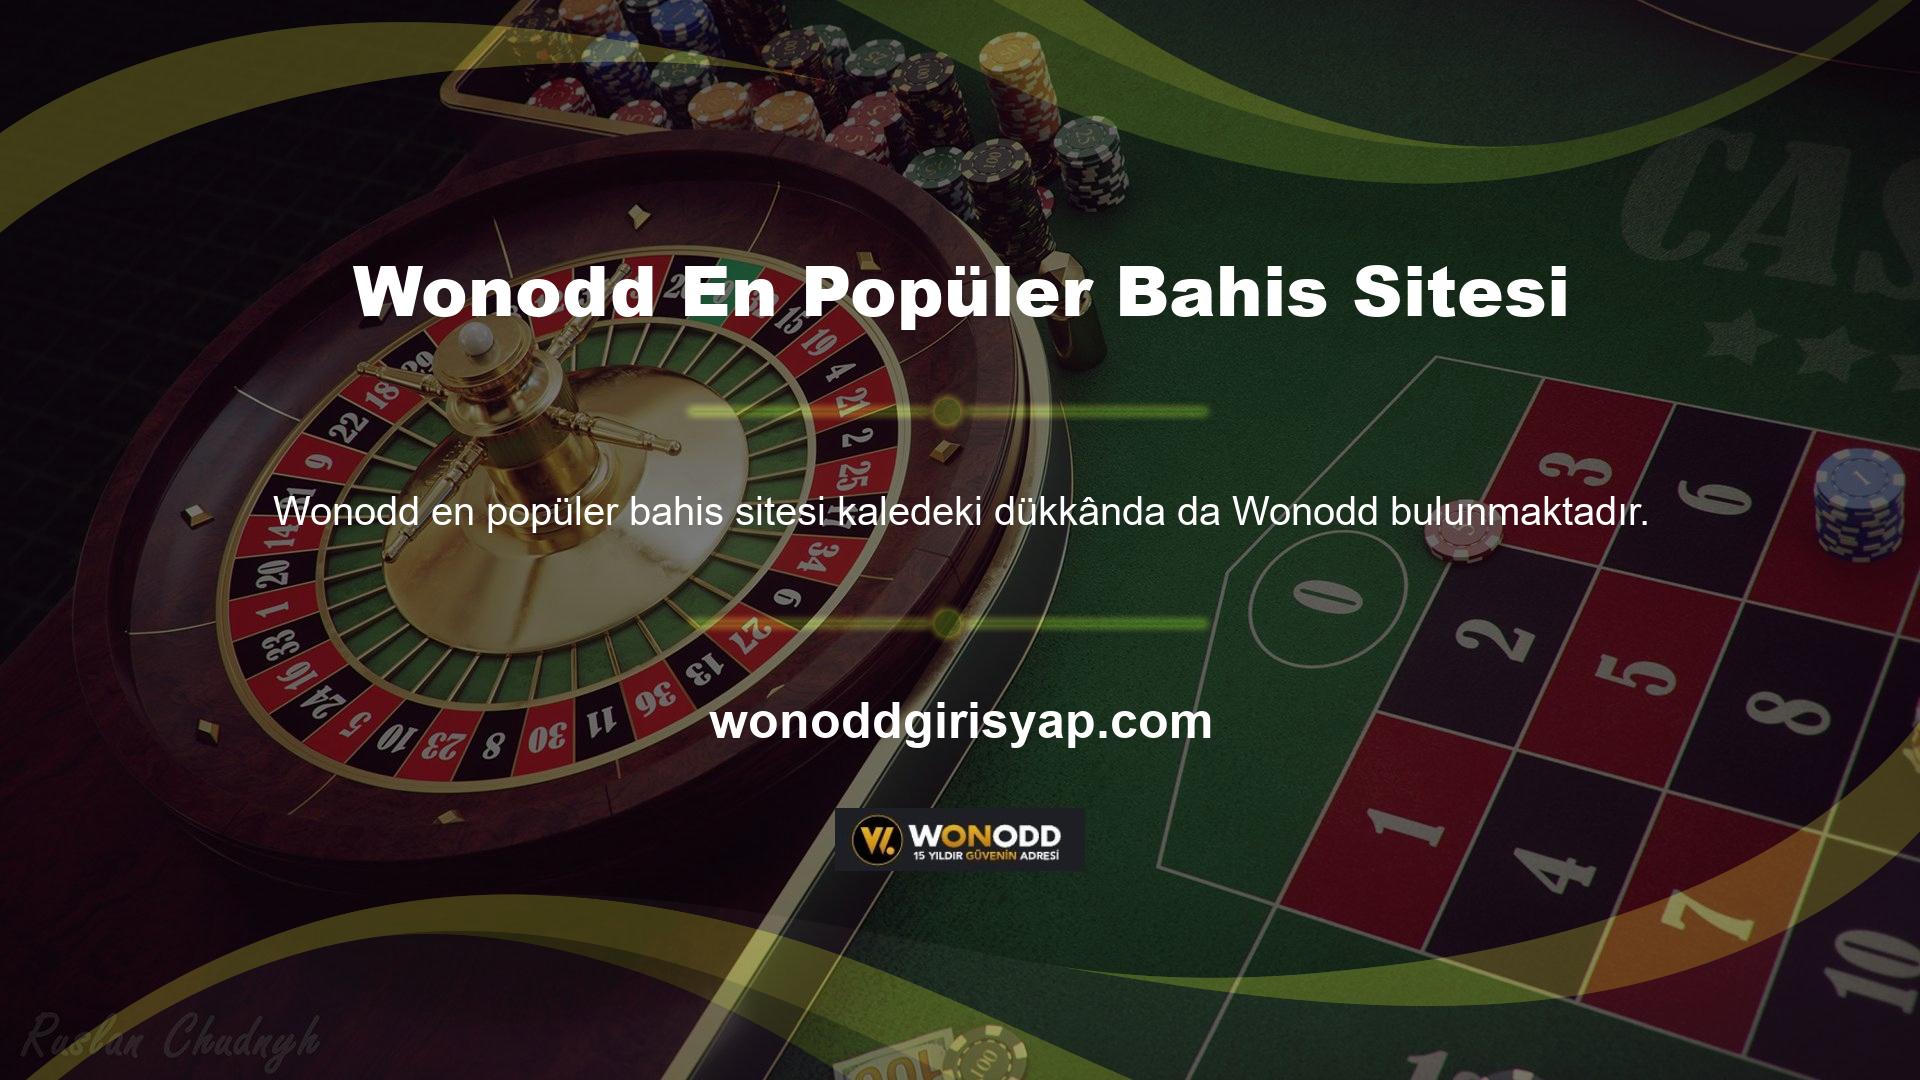 Wonodd en popüler bahis sitelerinden biridir ve ülkemizdeki blackjack oyuncularının ilgisini çekmektedir